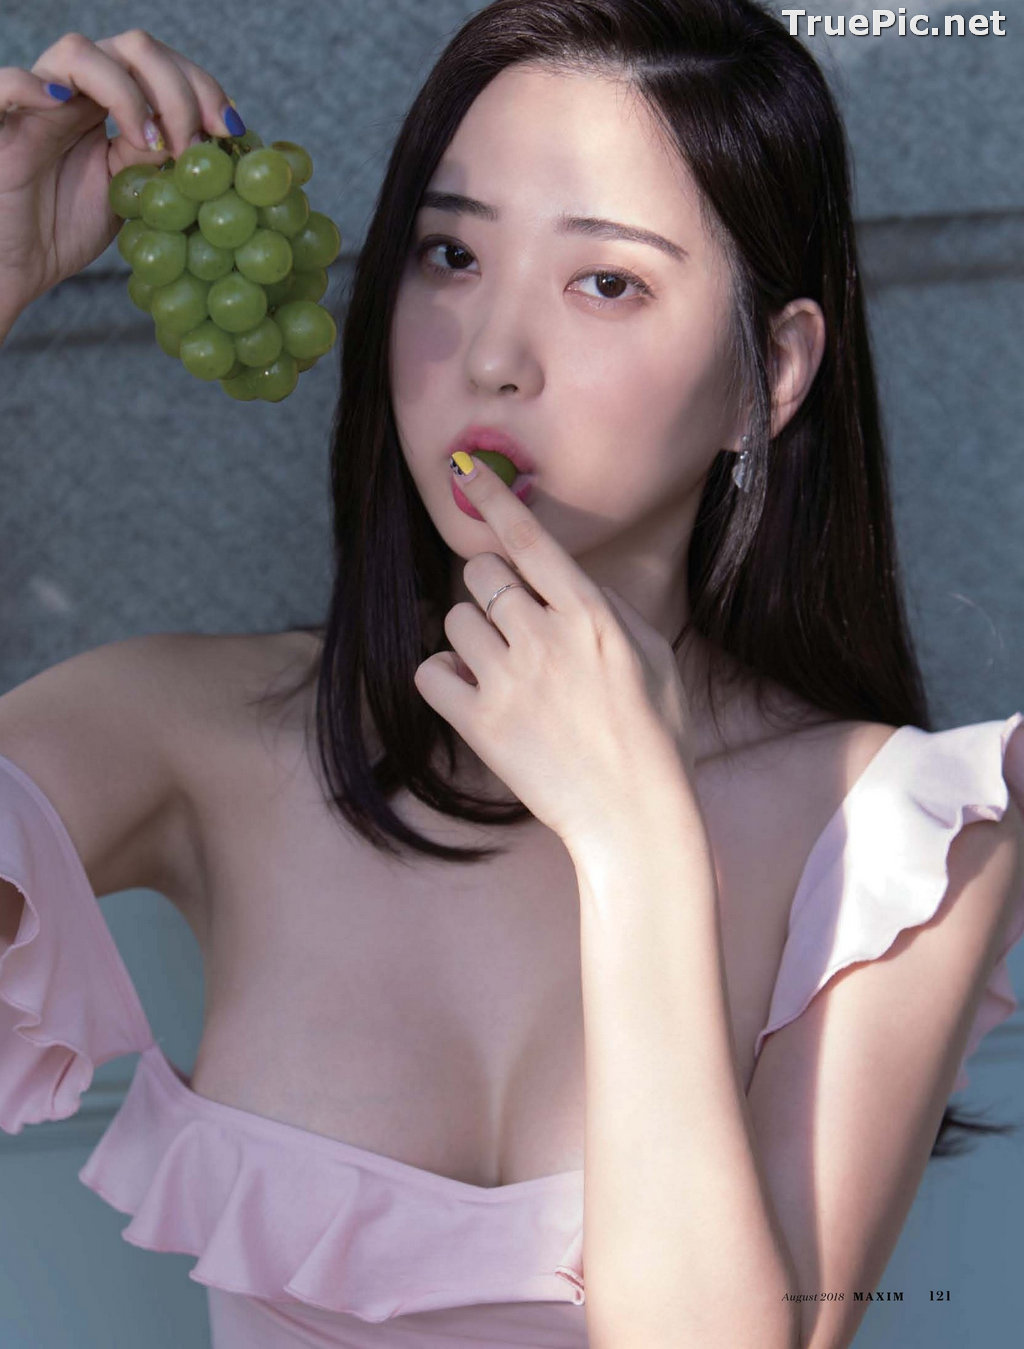 Image Korean Model - Shin Jae Eun (신재은) - MISS MAXIM CONTEST - TruePic.net - Picture-16